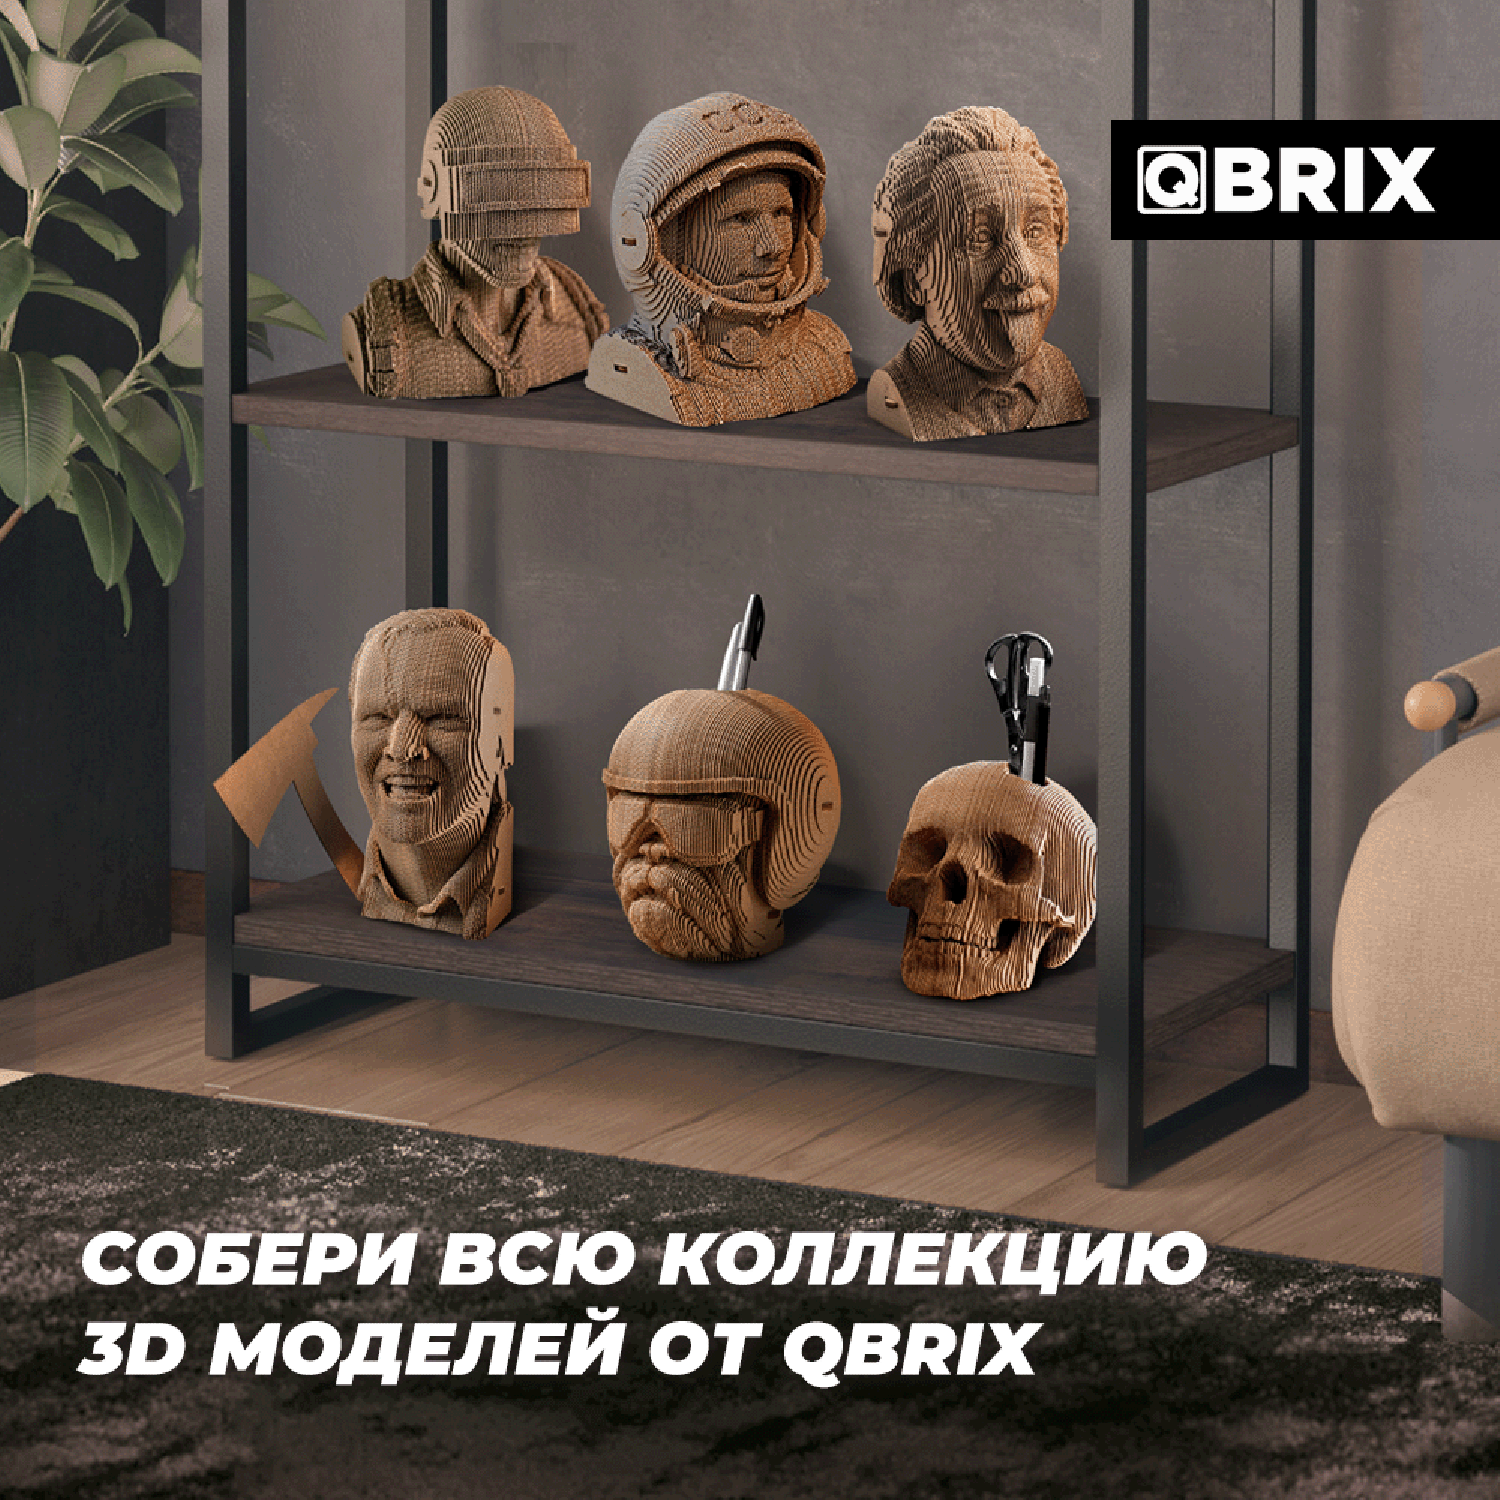 Конструктор QBRIX 3D картонный Сергей Есенин 20010 20010 - фото 9